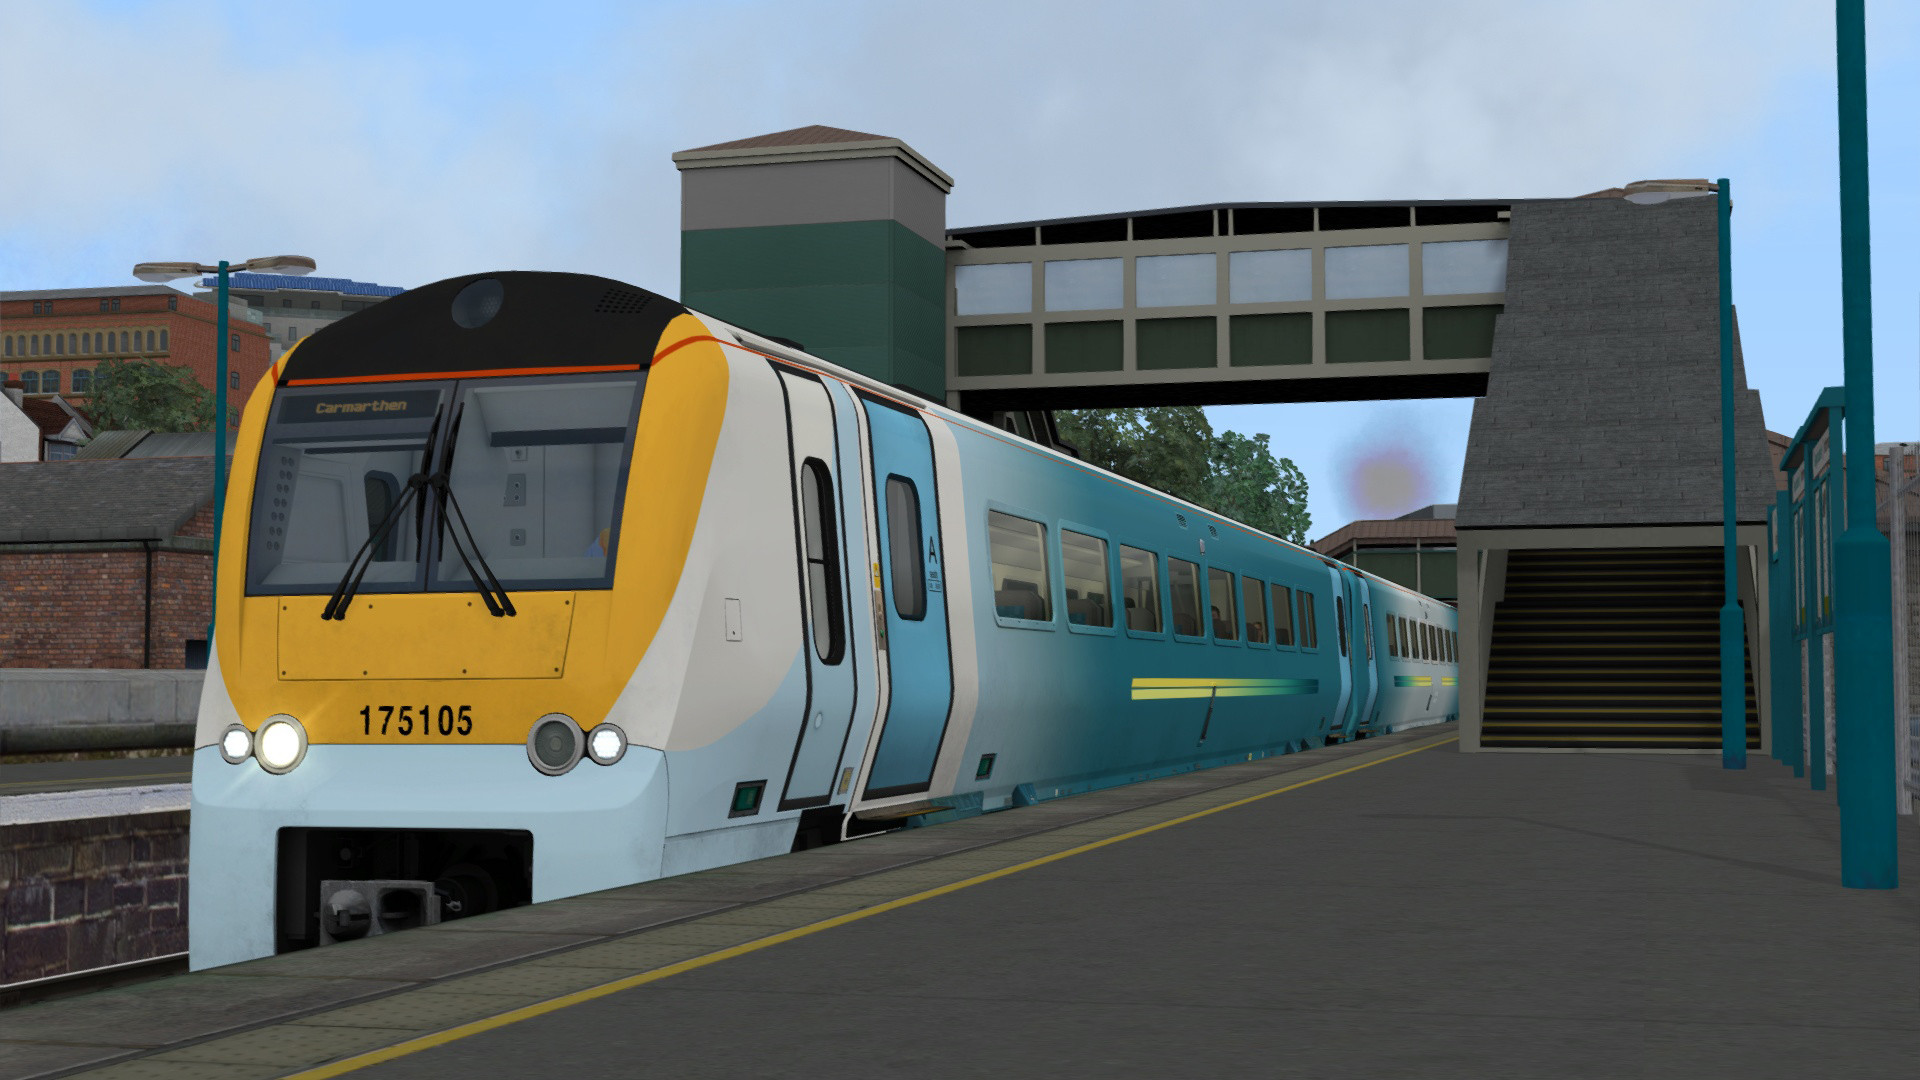 Train Simulator - South Wales Coastal: Bristol - Swansea Route Add-on DLC Steam CD Key 4.17 usd